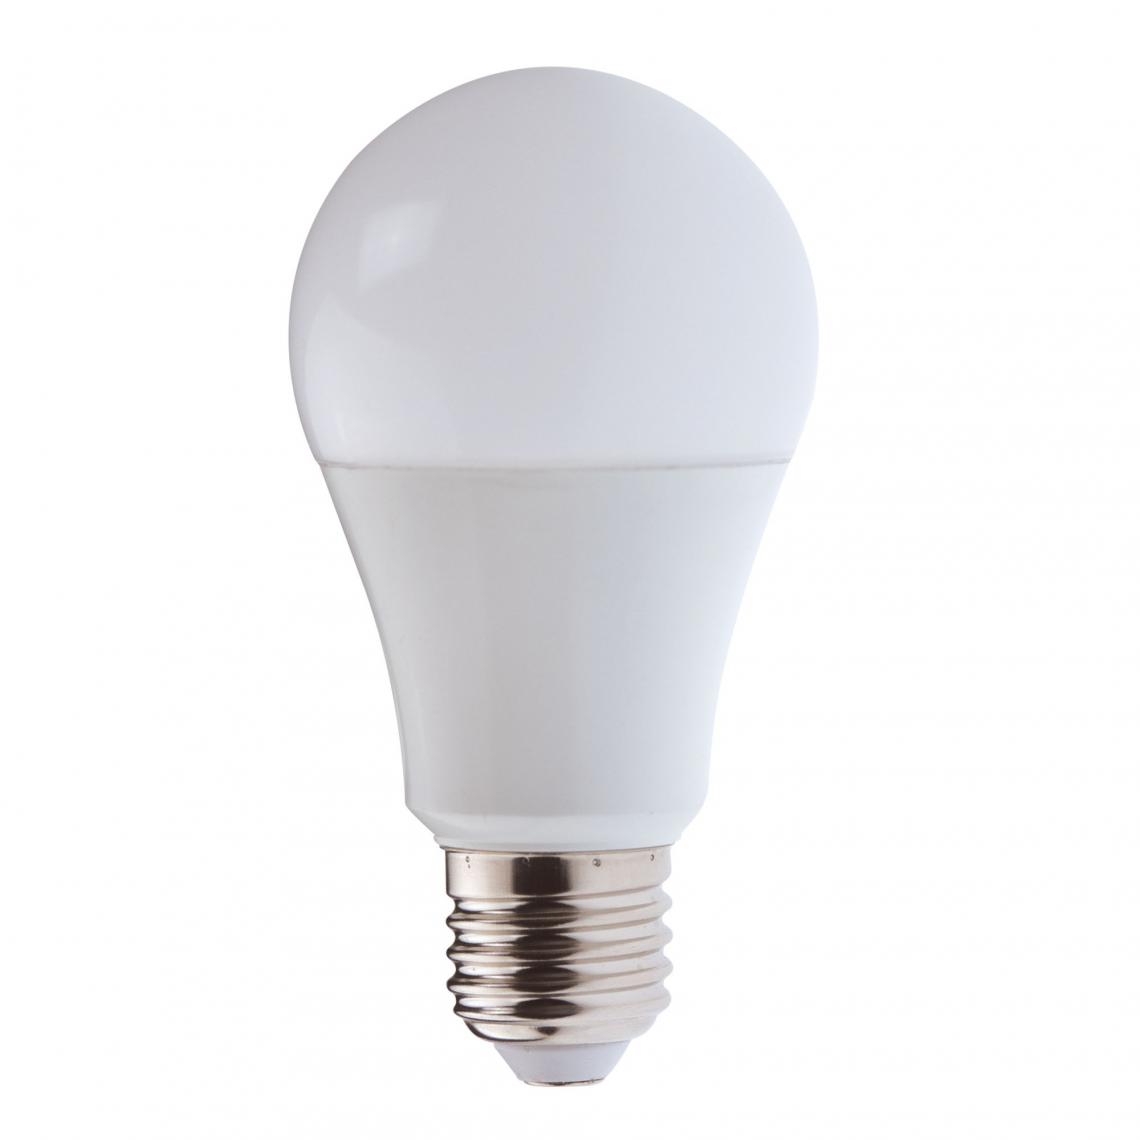 Velamp - Ampoule LED SMD, standard A60, 9W / 806lm, culot E27, 3000K - Ampoules LED